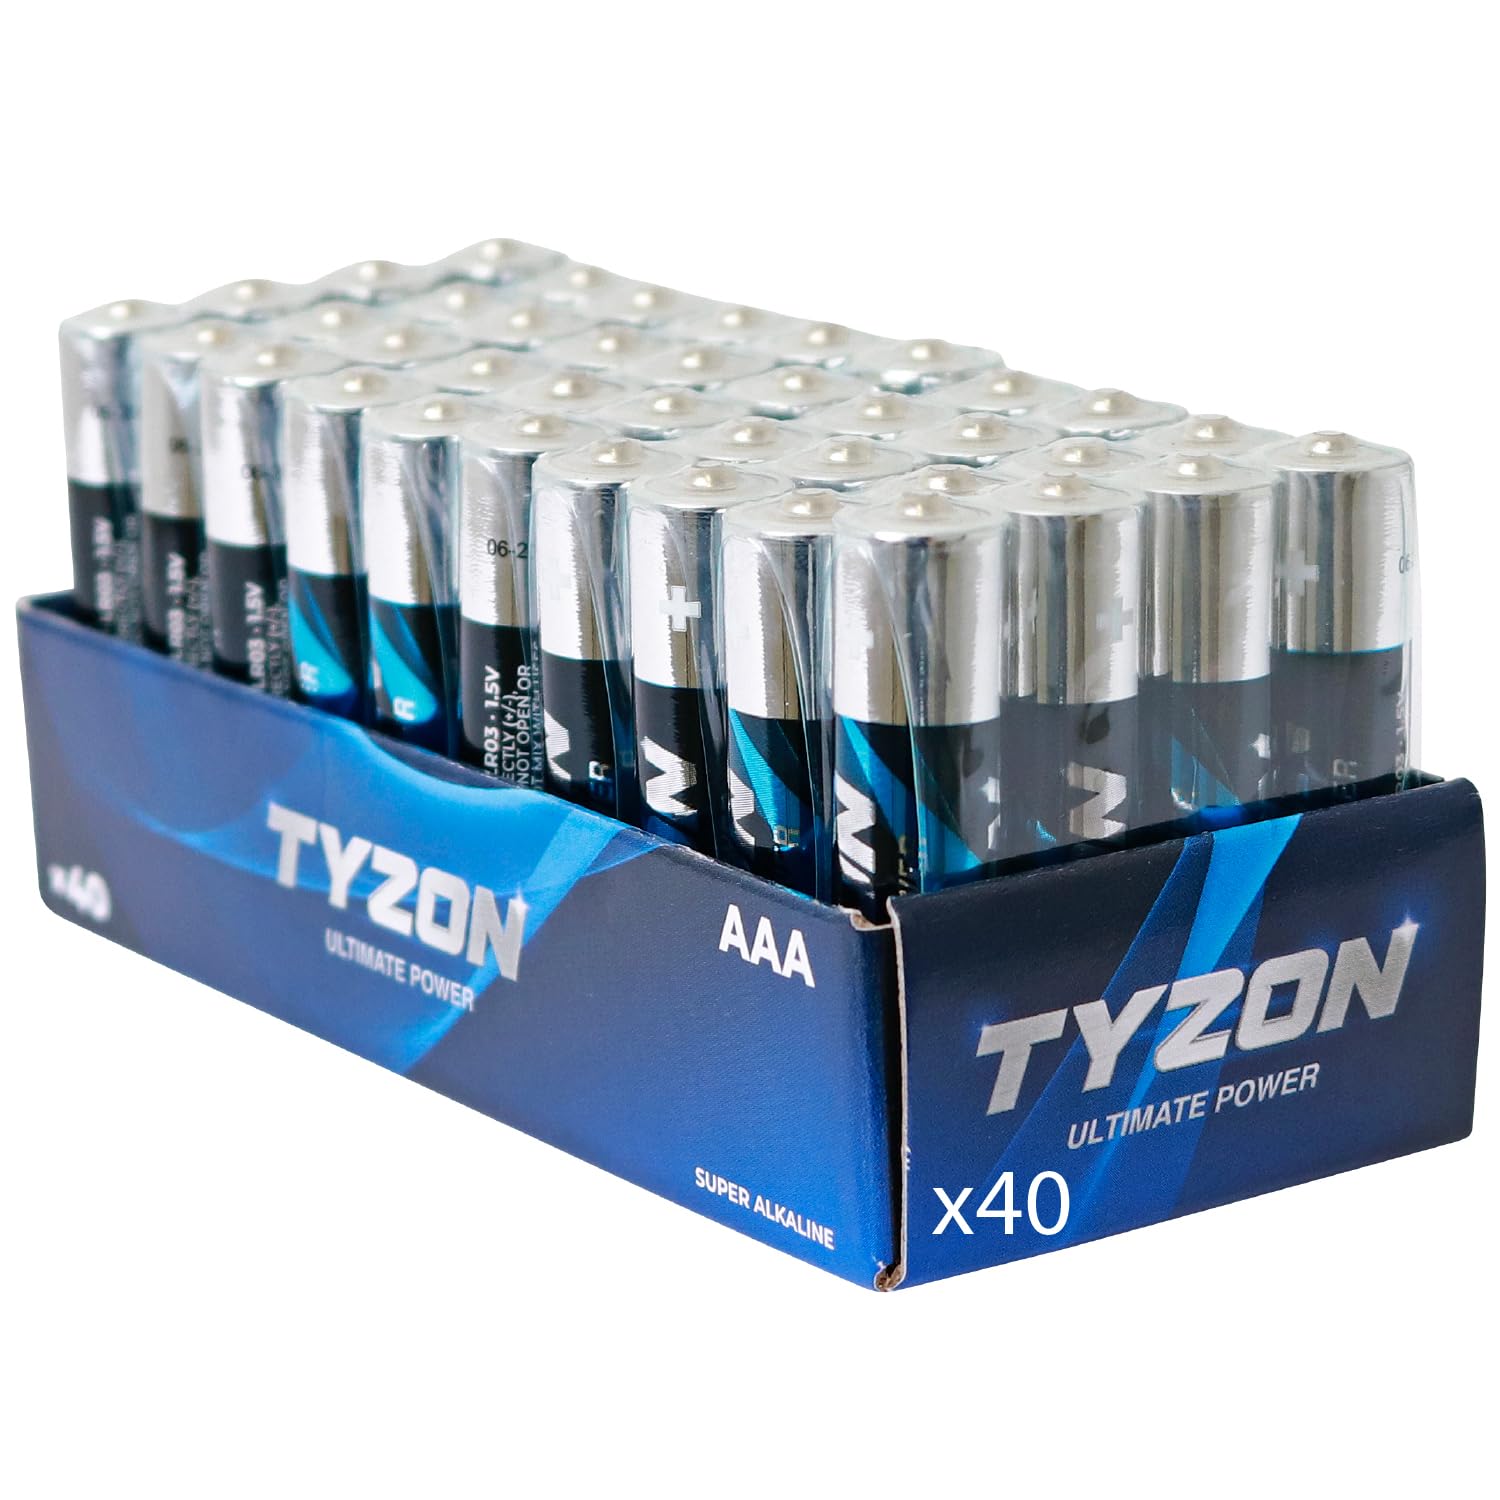 Classique Tyzon® Piles Alcalines AAA 1,5 V, Pack de 40 – Durables & Haute Performance, Idéales pour Appareils Ménagers et Électroniques ZAHswkKC2 stylé 